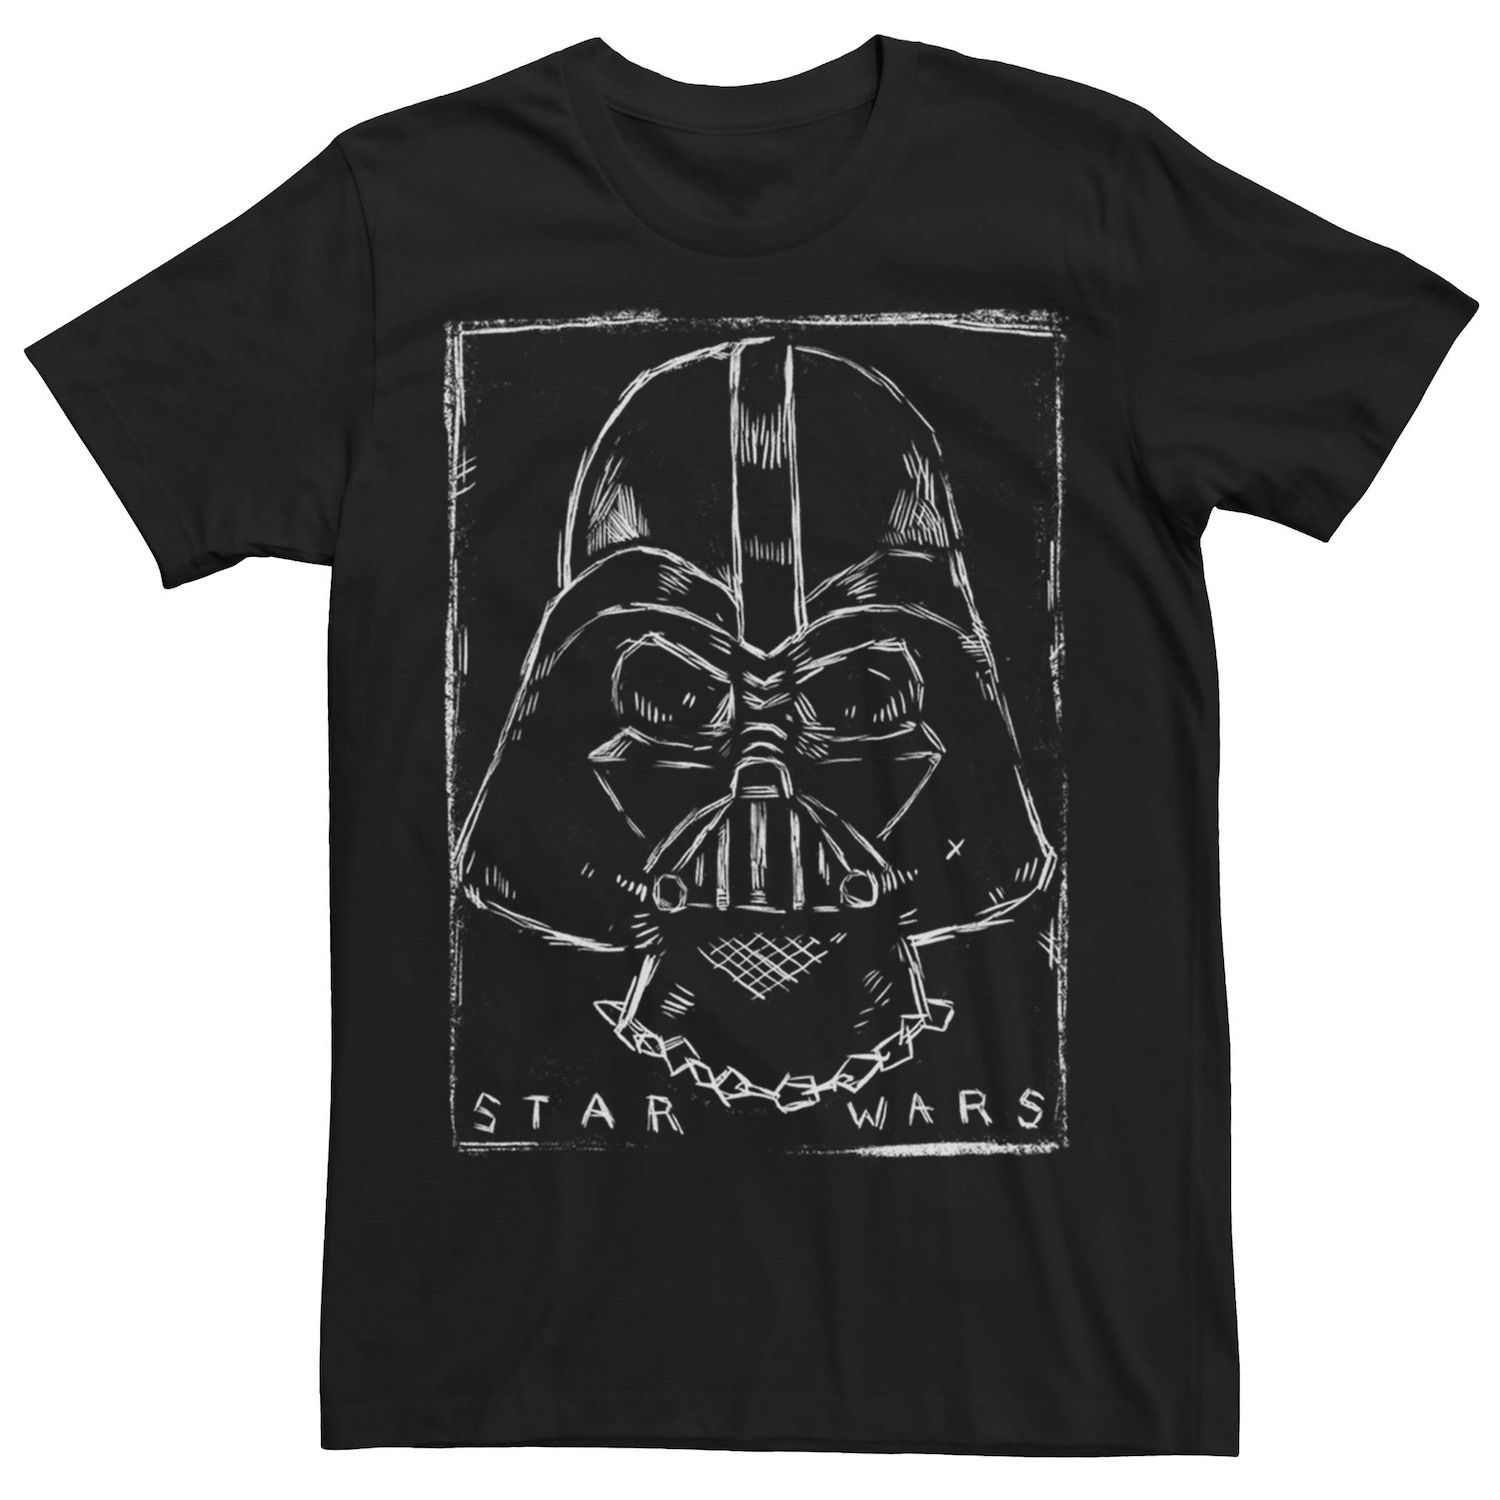 Мужская футболка с портретом Дарта Вейдера и эскизом Star Wars